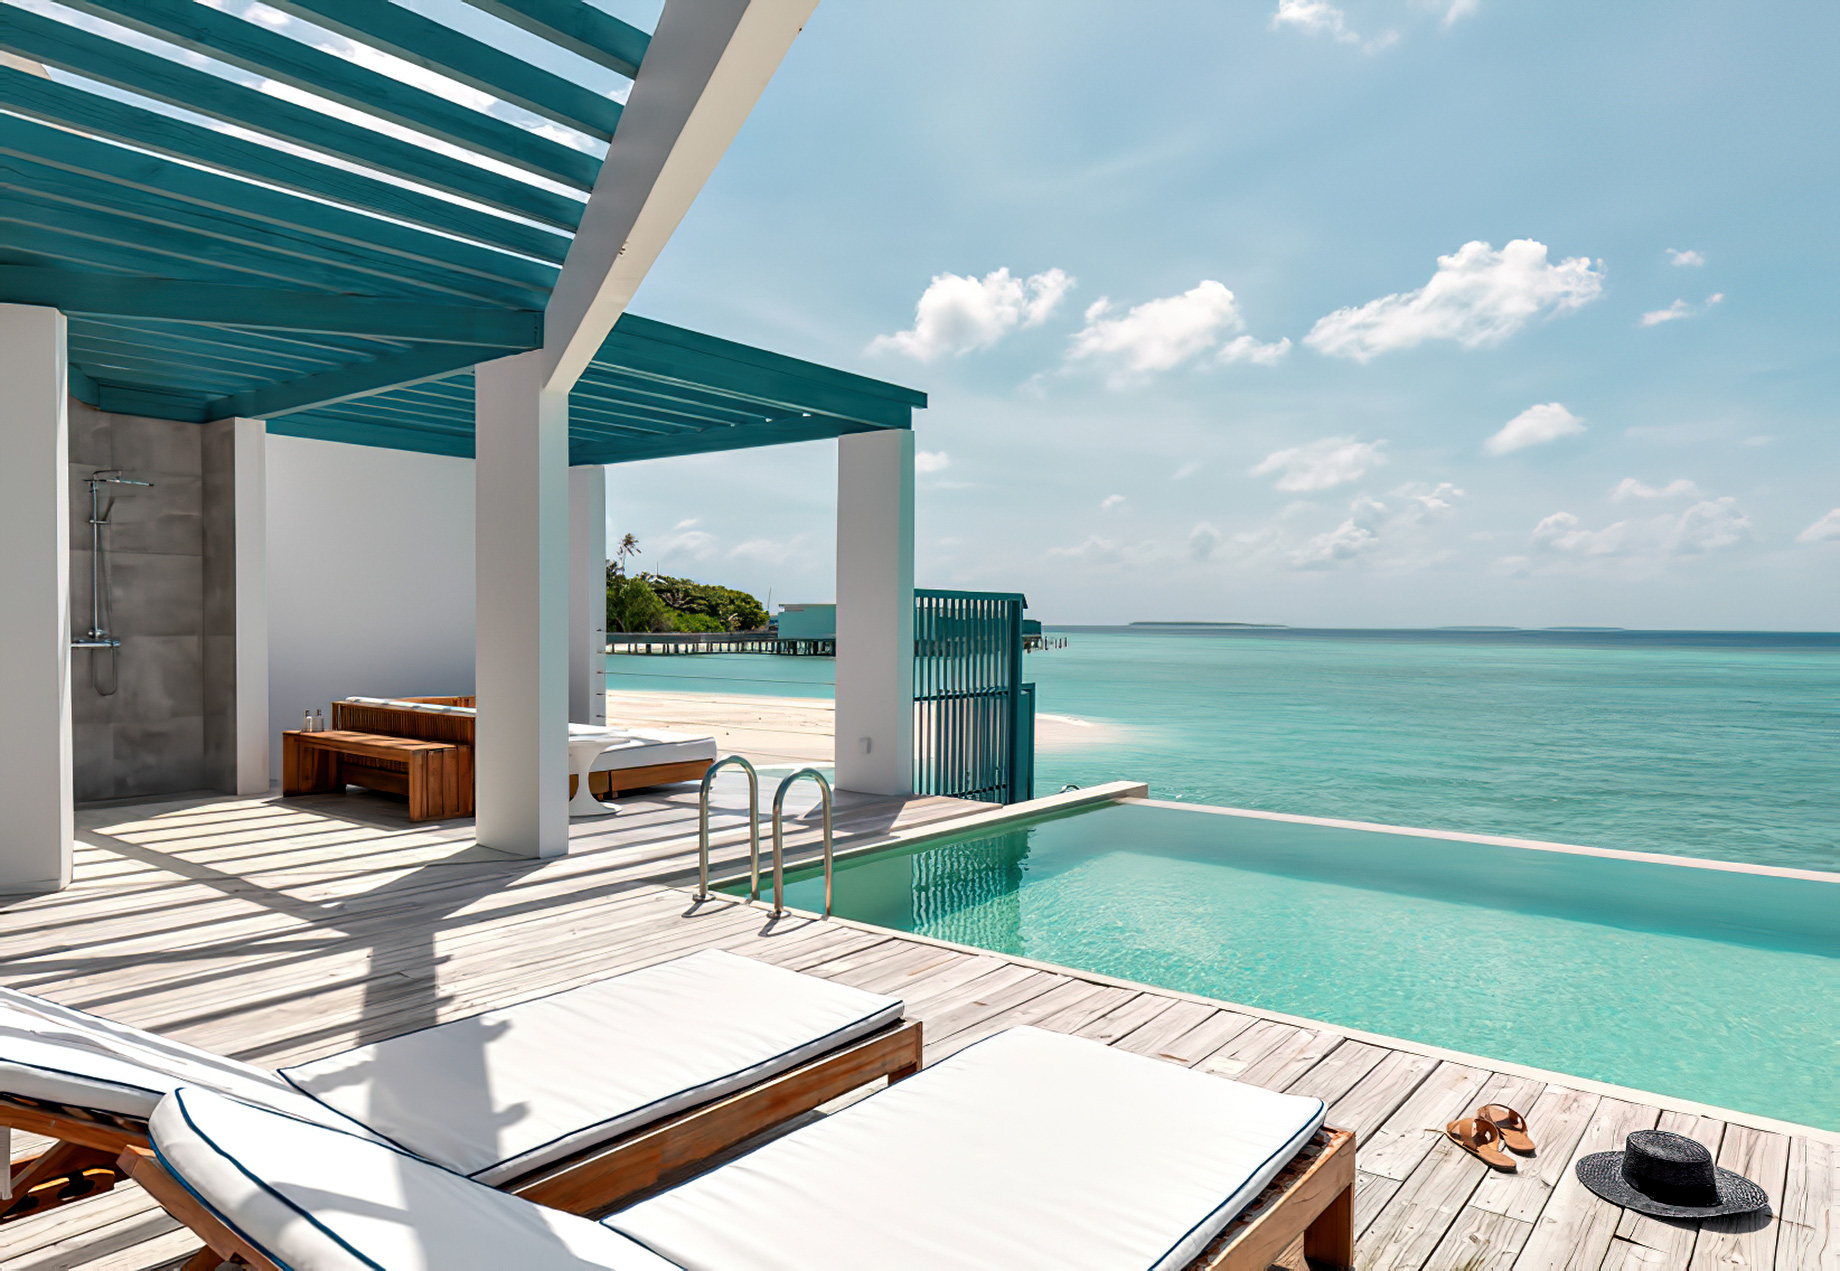 Amilla Fushi Resort and Residences – Baa Atoll, Maldives – Overwater Villa Pool Deck View